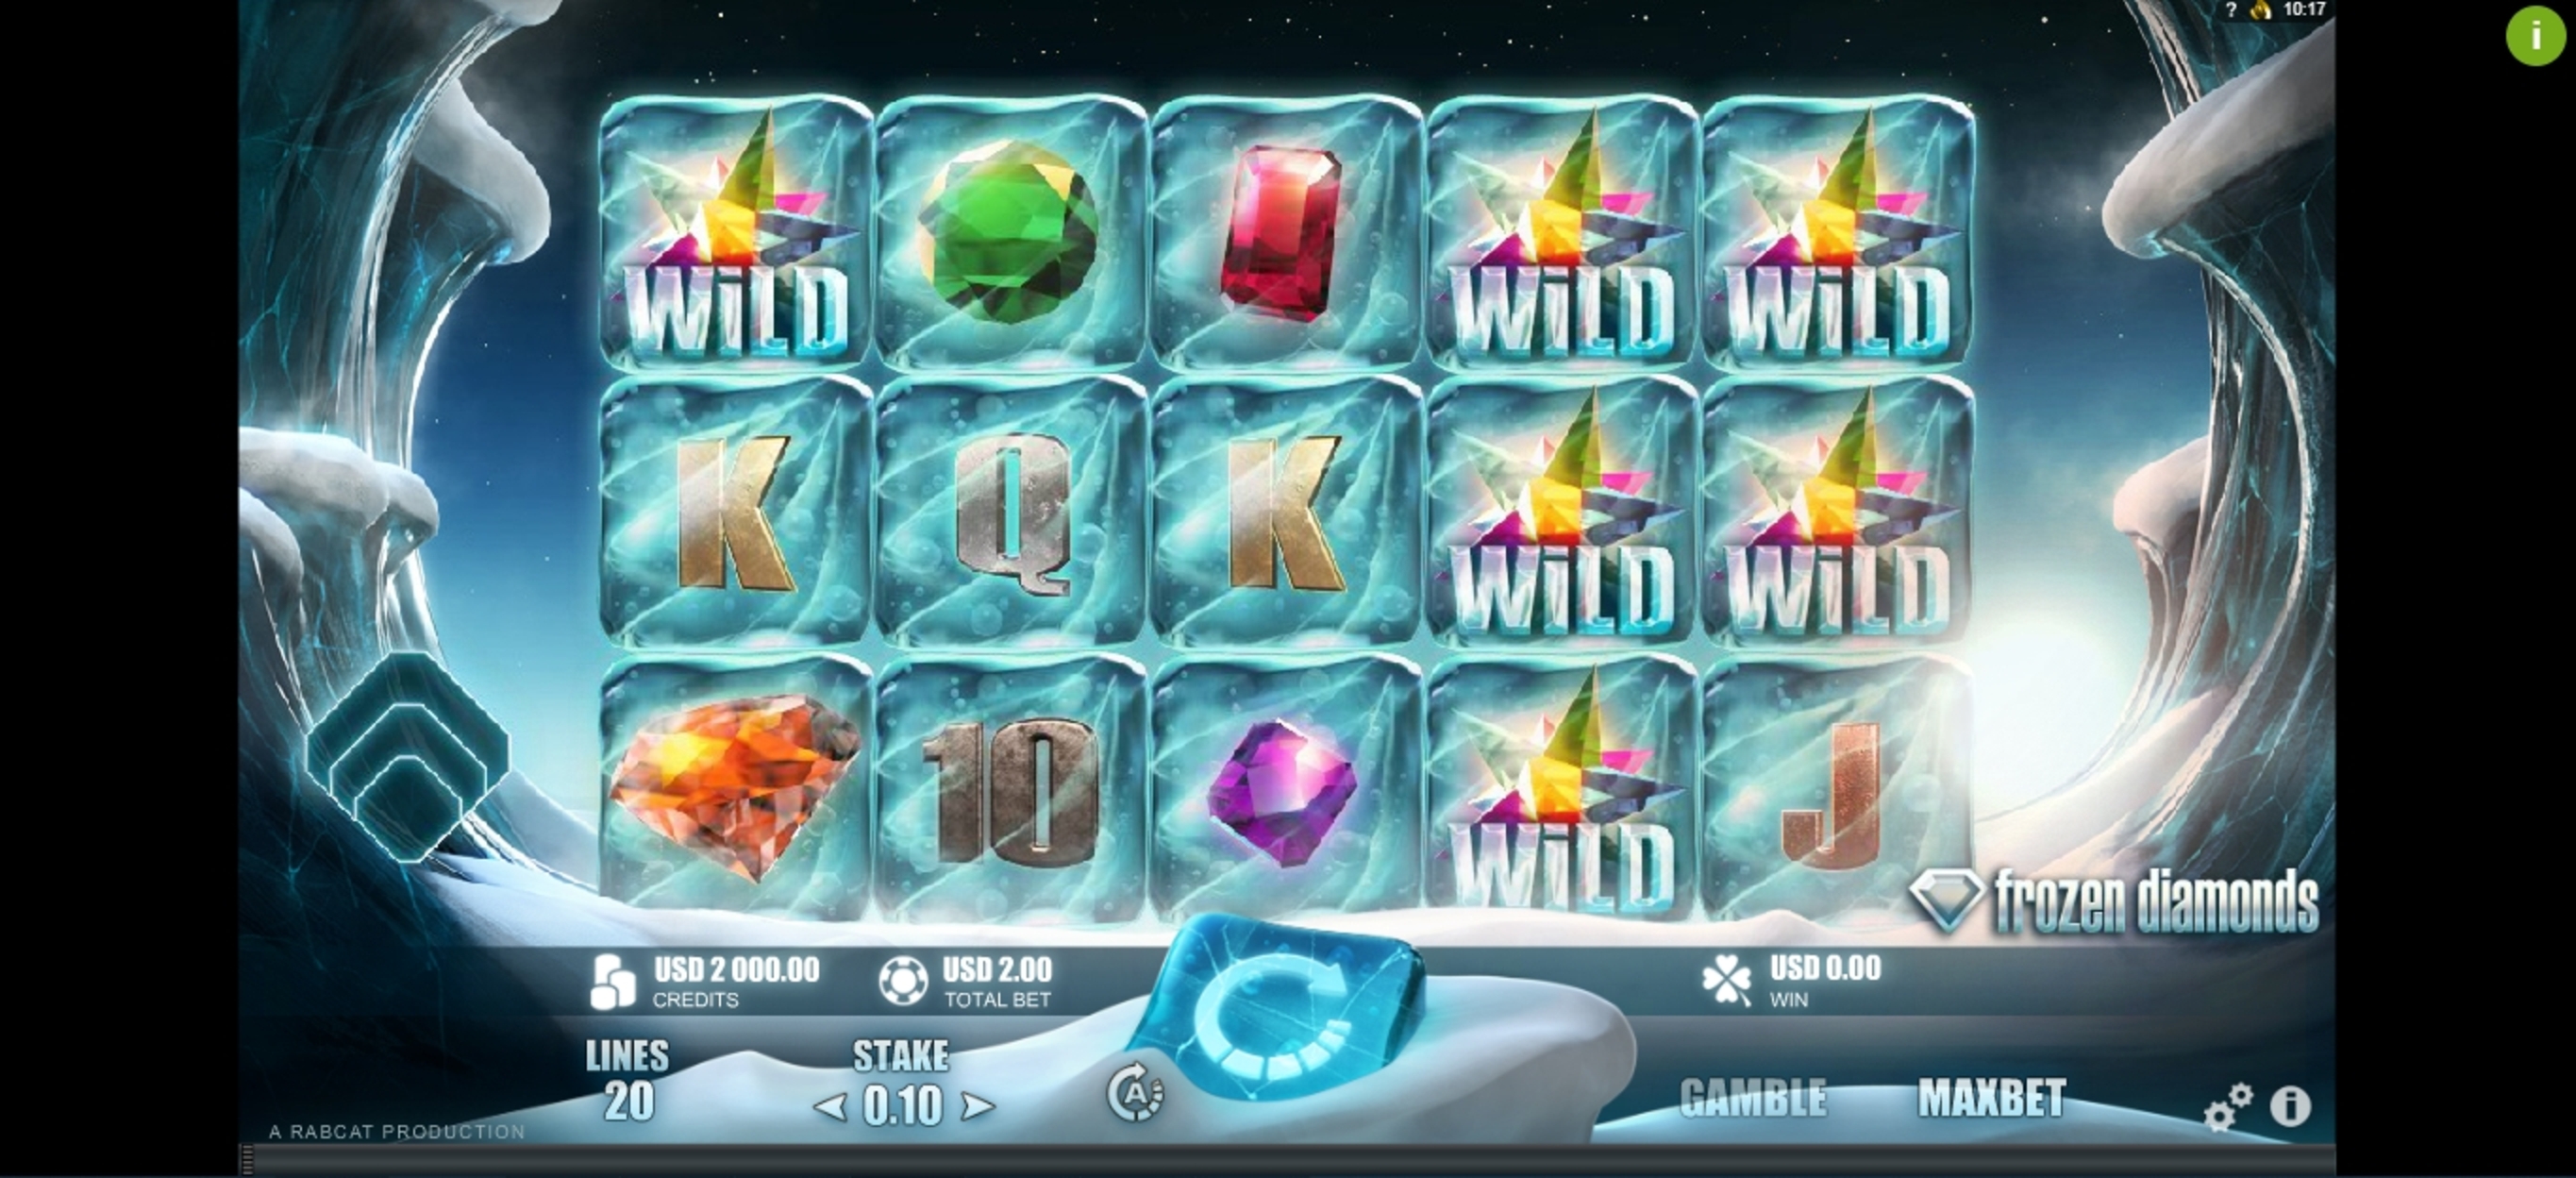 Reels in Frozen Diamonds Slot Game by Rabcat